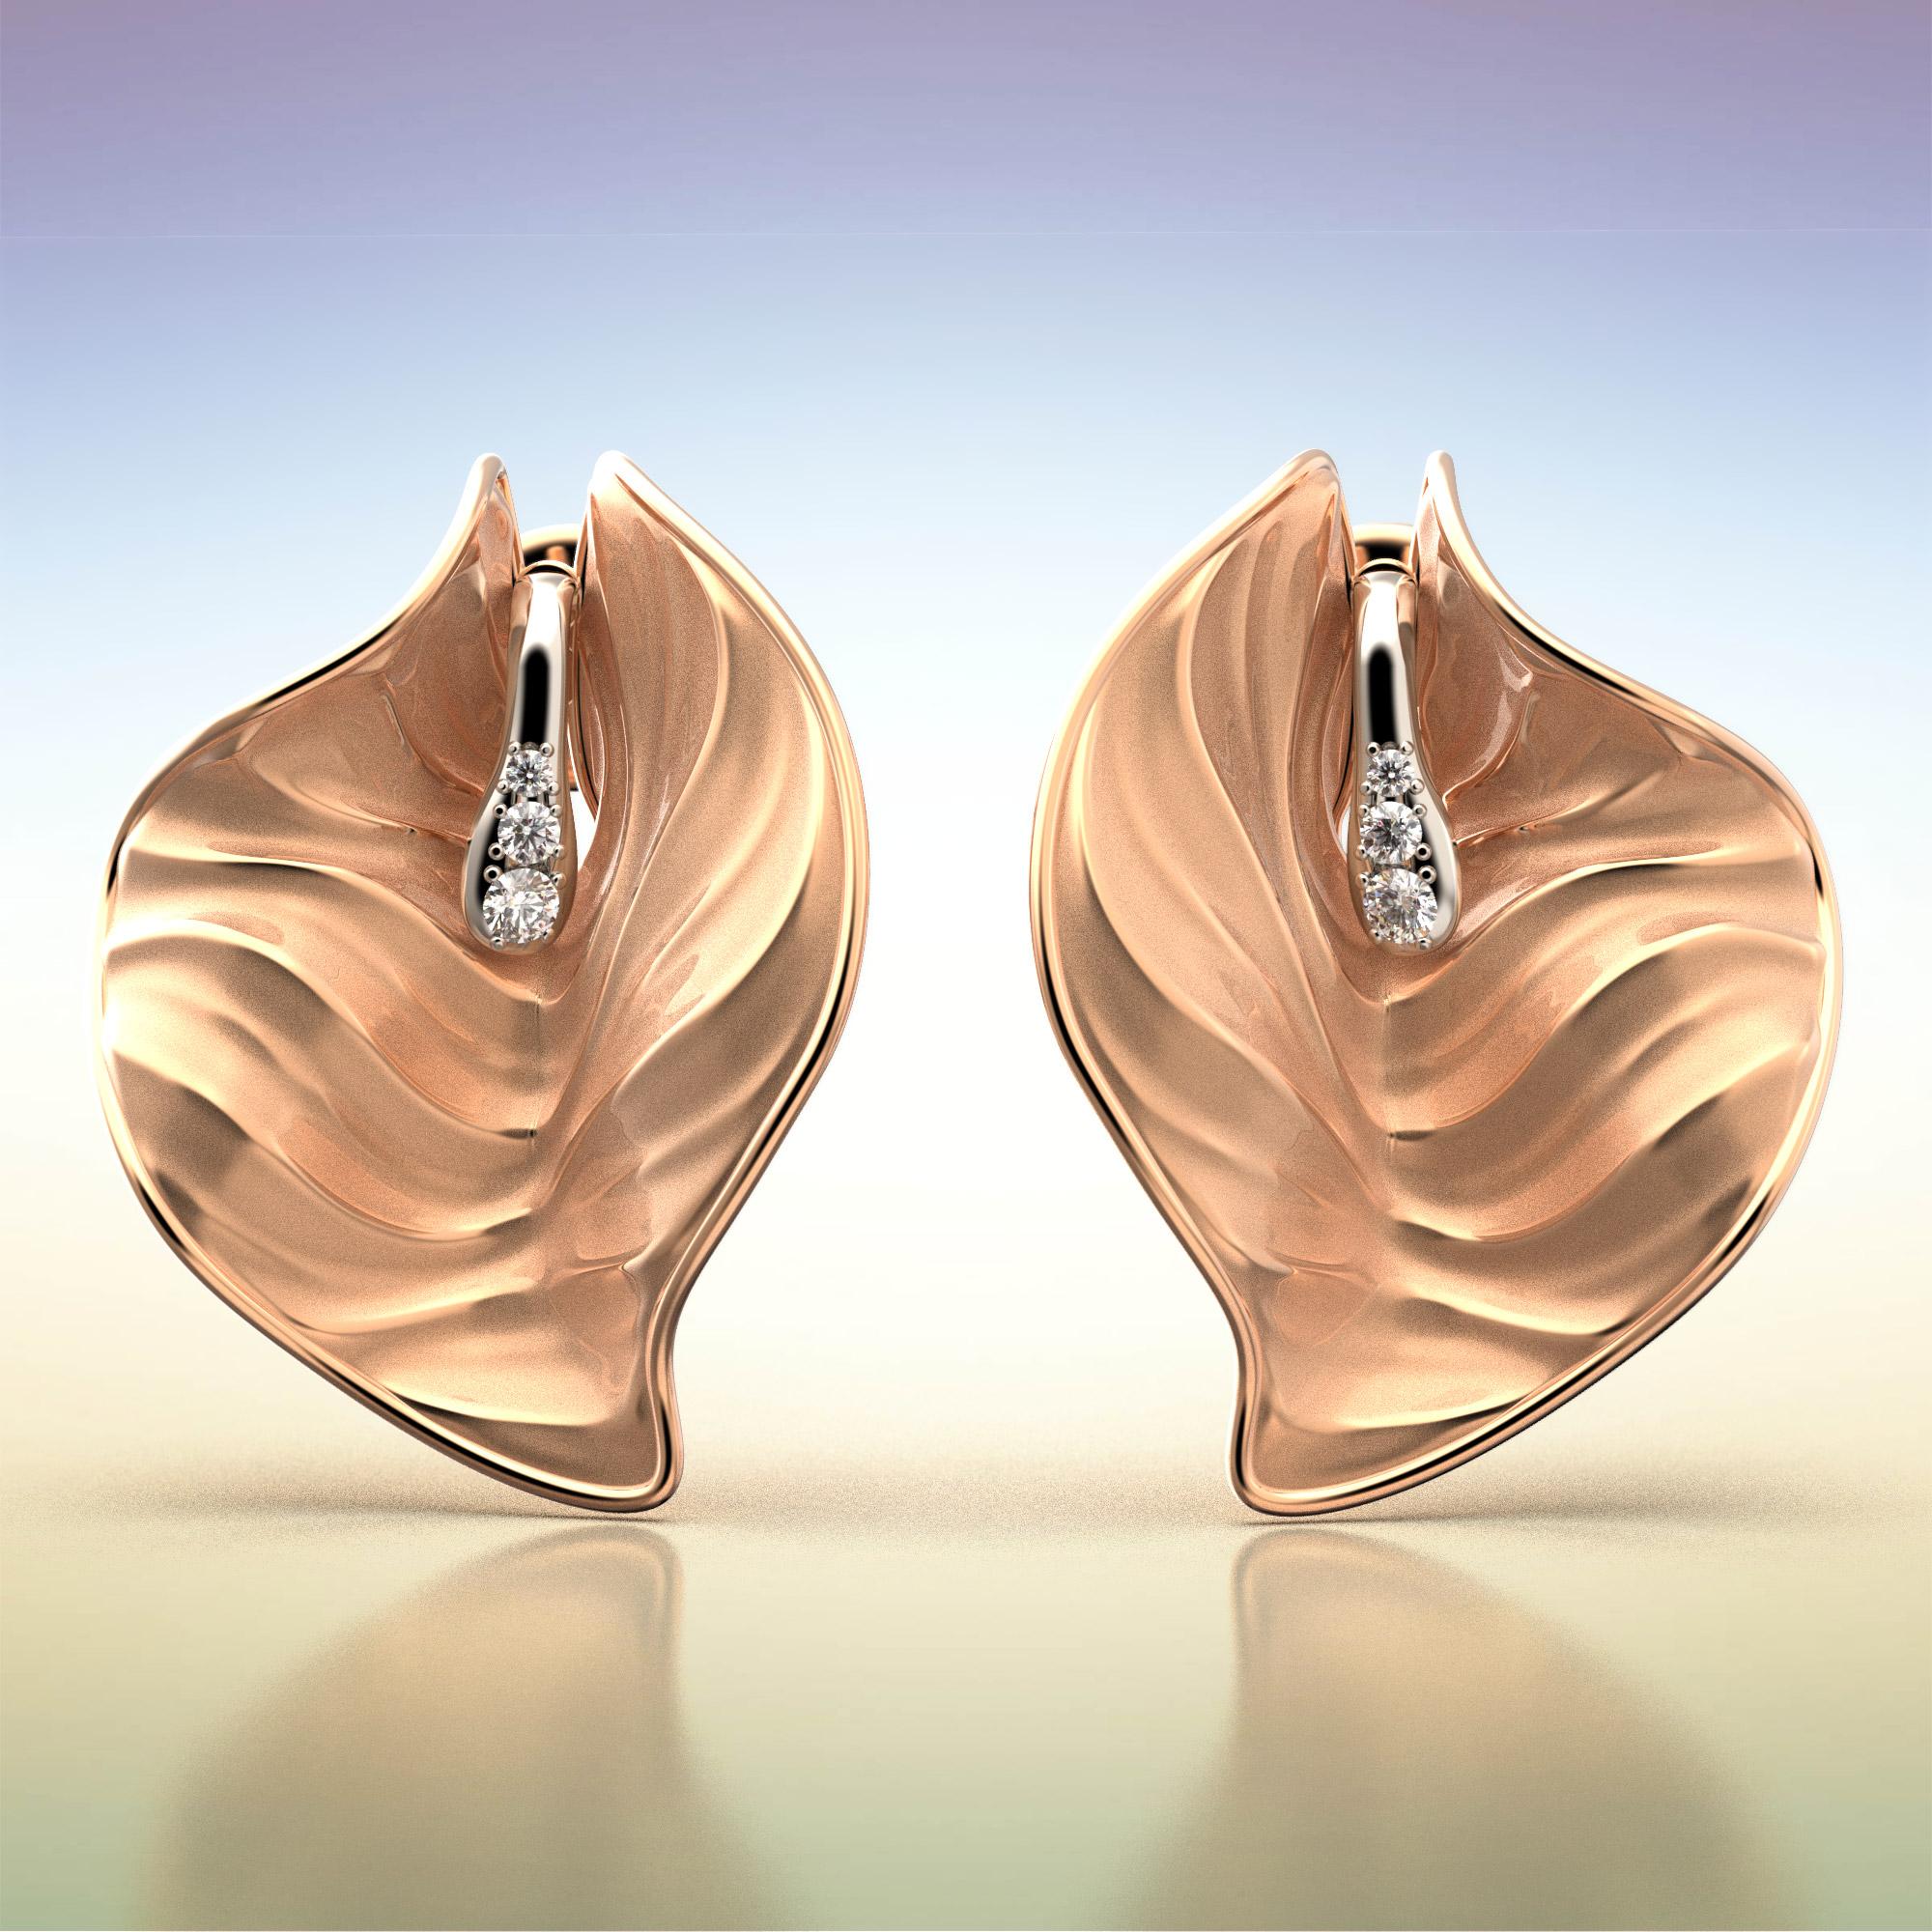 Die Calla-Ohrringe zeichnen sich durch ein Wechselspiel geschwungener Bewegungen aus, die durch die auf dem Stempel gefassten Diamanten verschönert werden.
Ein anspruchsvolles und einzigartiges Schmuckstück.  
Vento ist eine Kollektion, die die